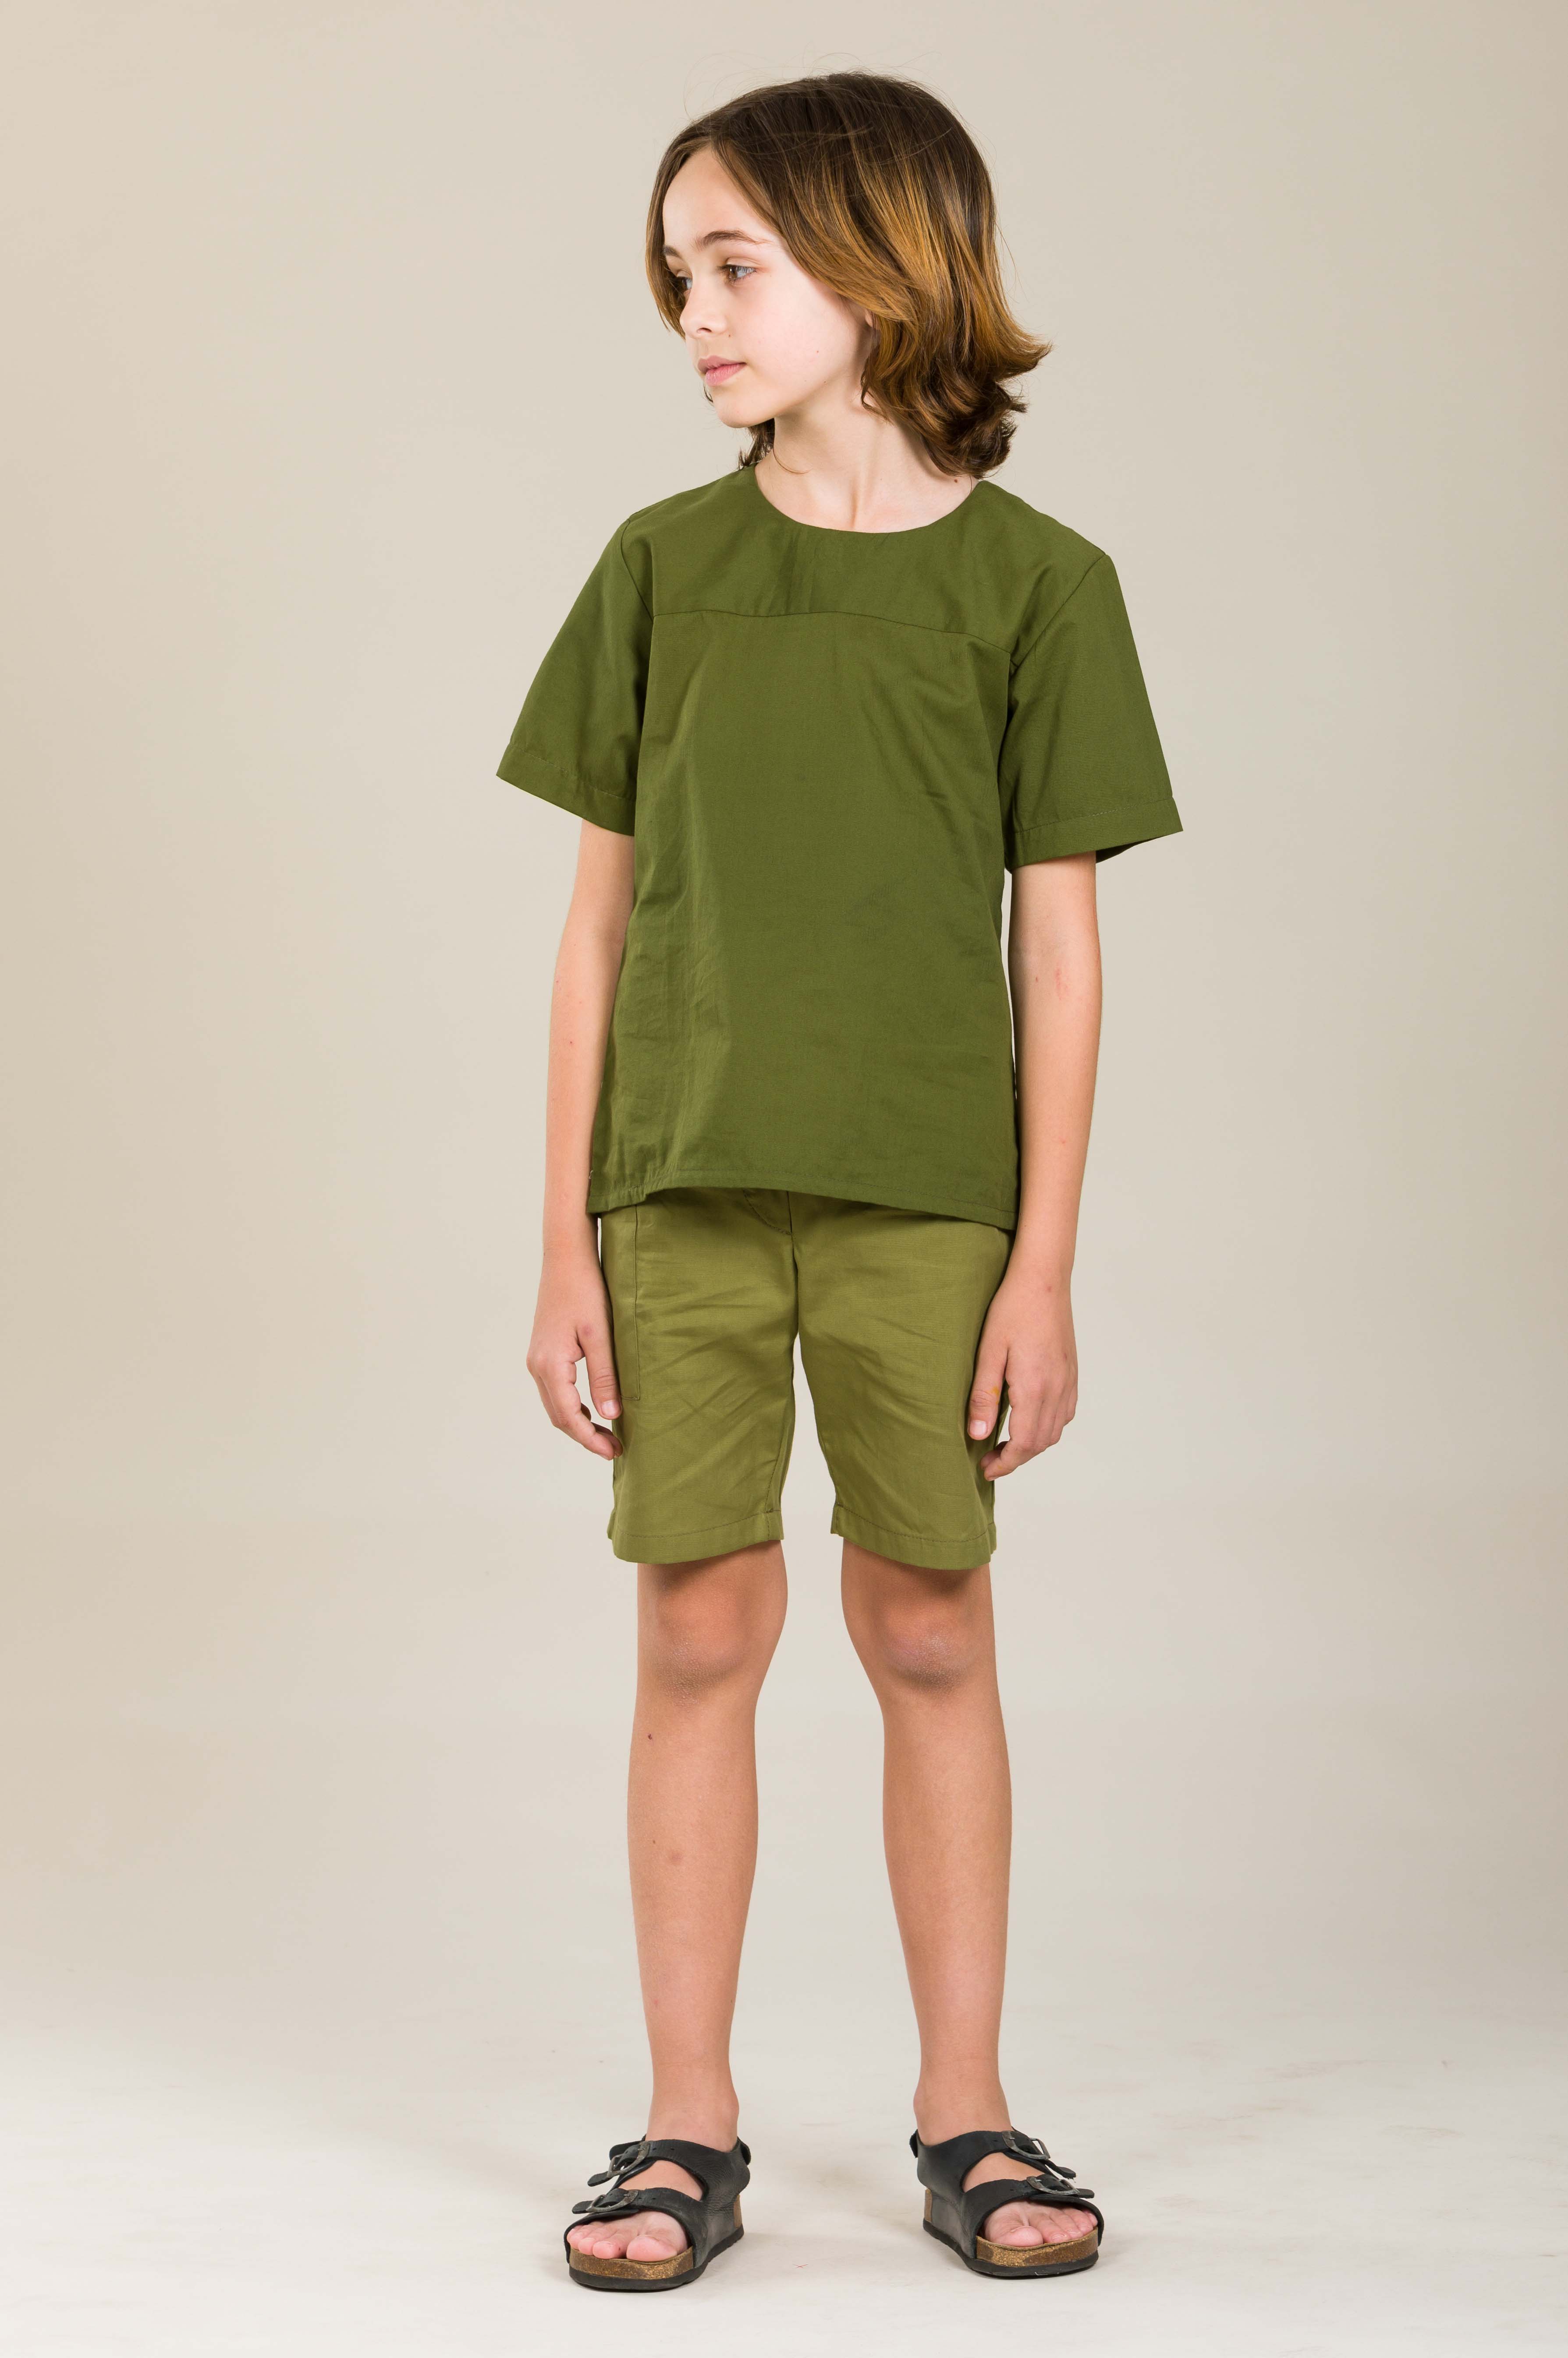                                                                                                                                              Tarifa Shirt - Green